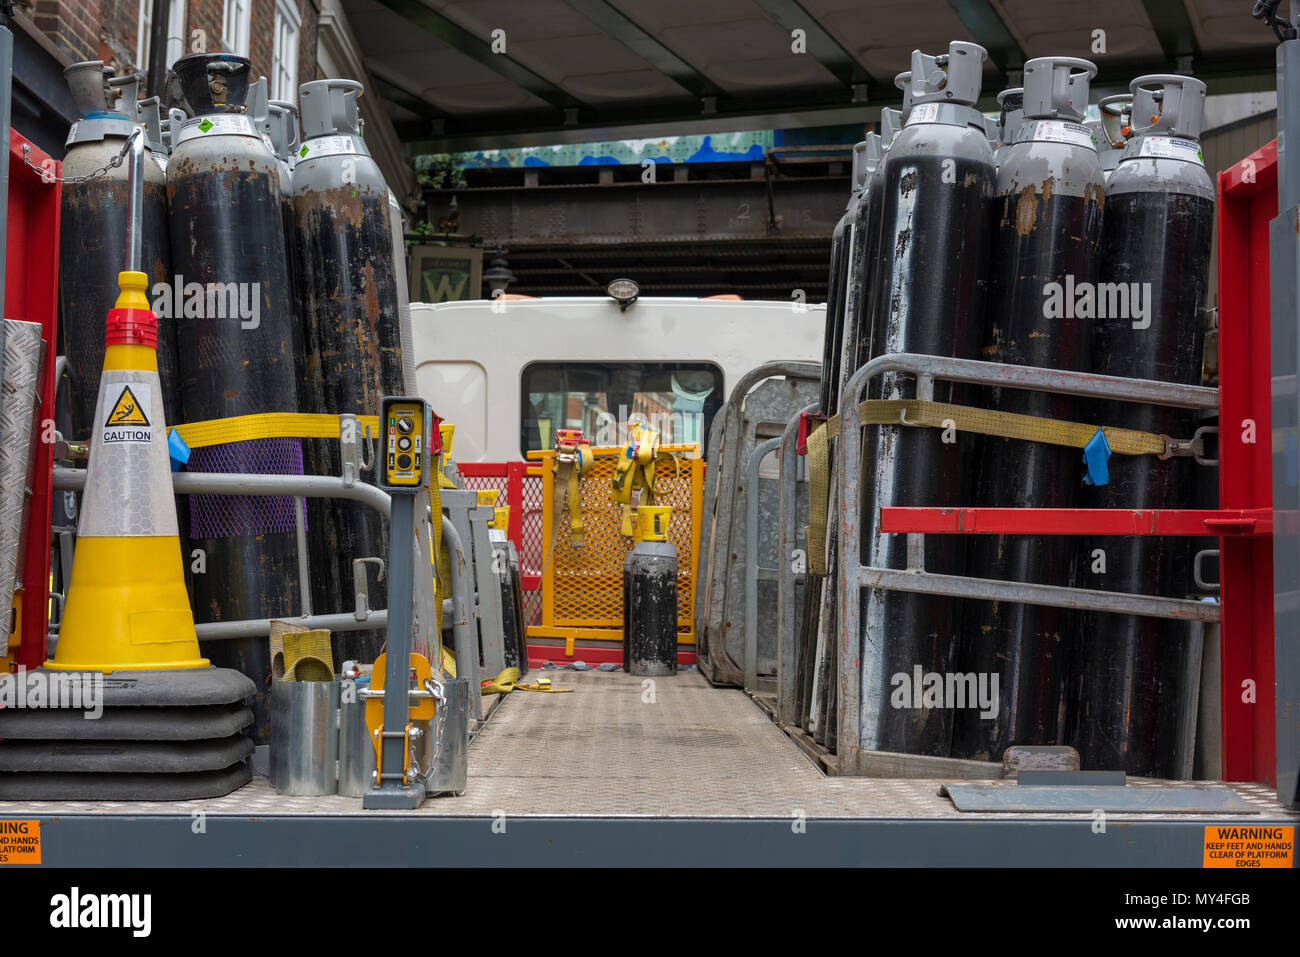 Eine LKW-Ladung von BOC Gas Flaschen auf dem Rücken der Lkw an Krankenhäuser geliefert wird, und genehmigte Voraussetzungen. verdichtete Gase für medizinische Zwecke und Fässer. Stockfoto